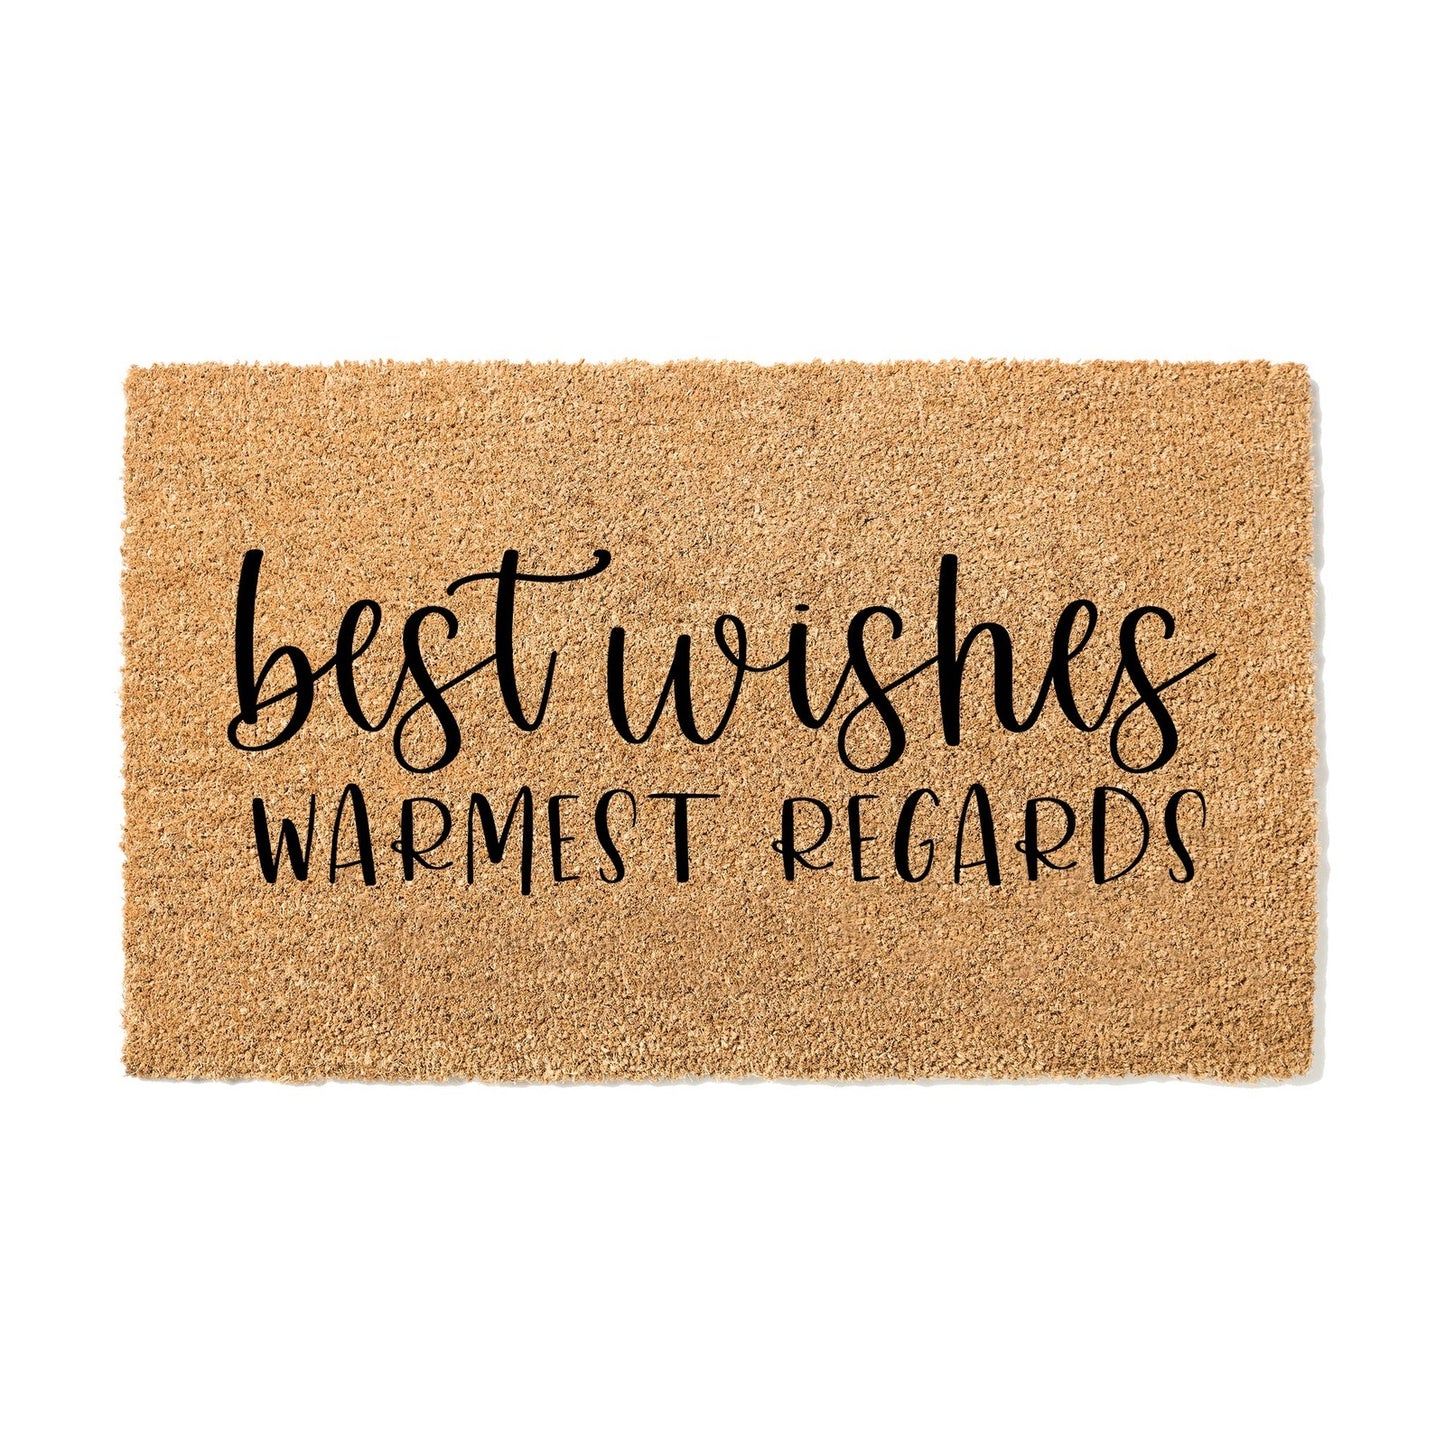 Best Wishes Warmest Regards Doormat